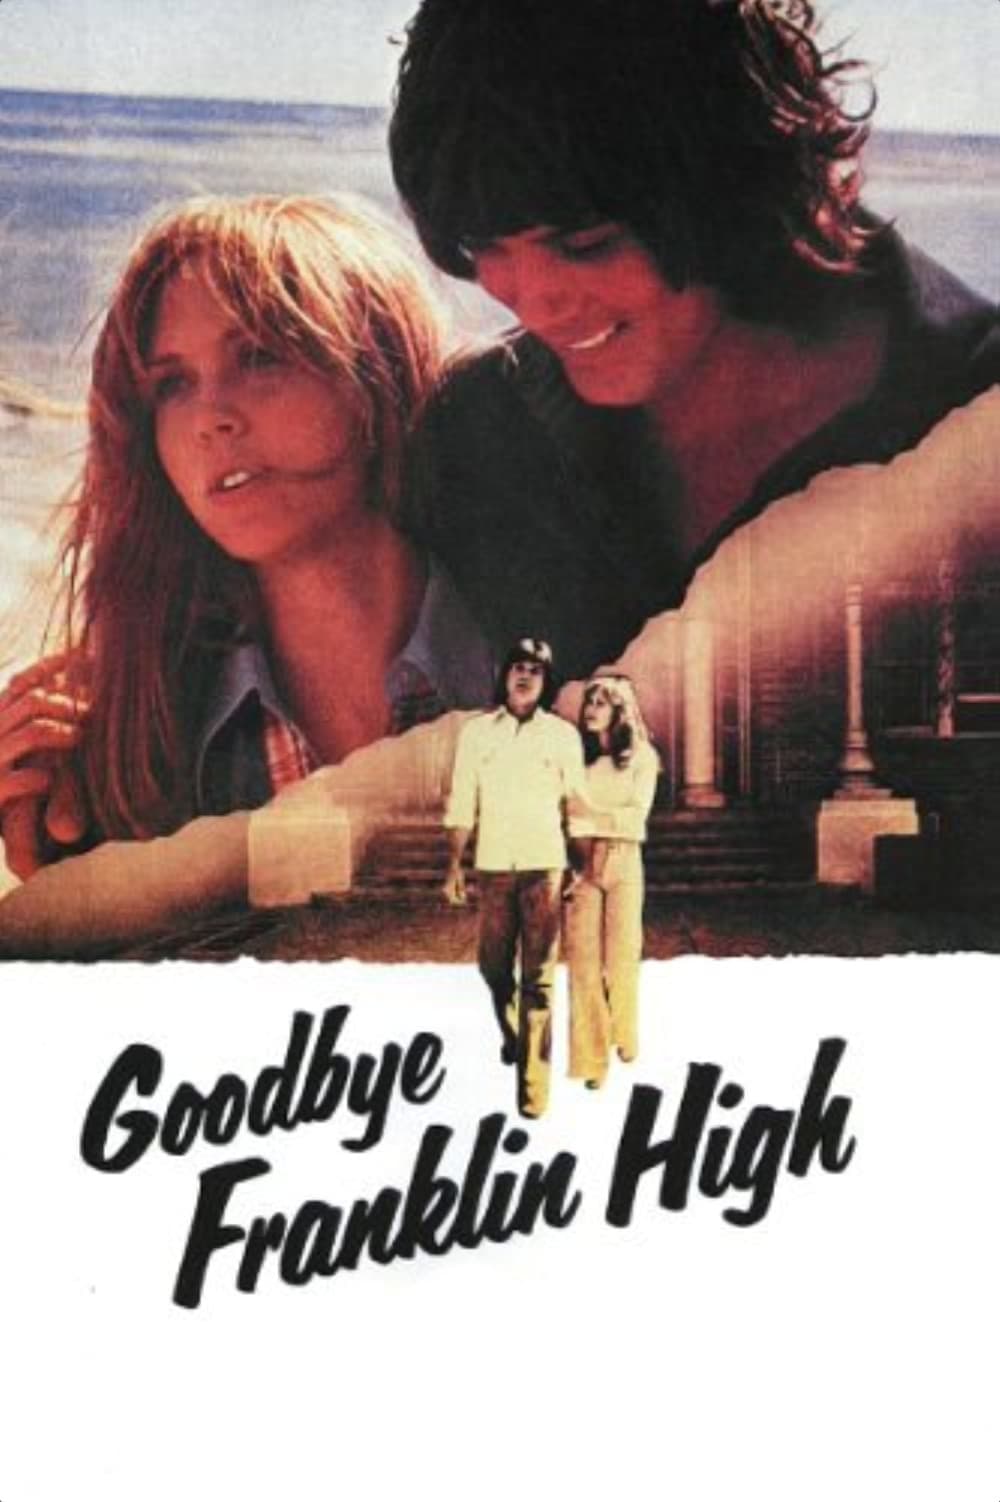 Goodbye, Franklin High (1978)